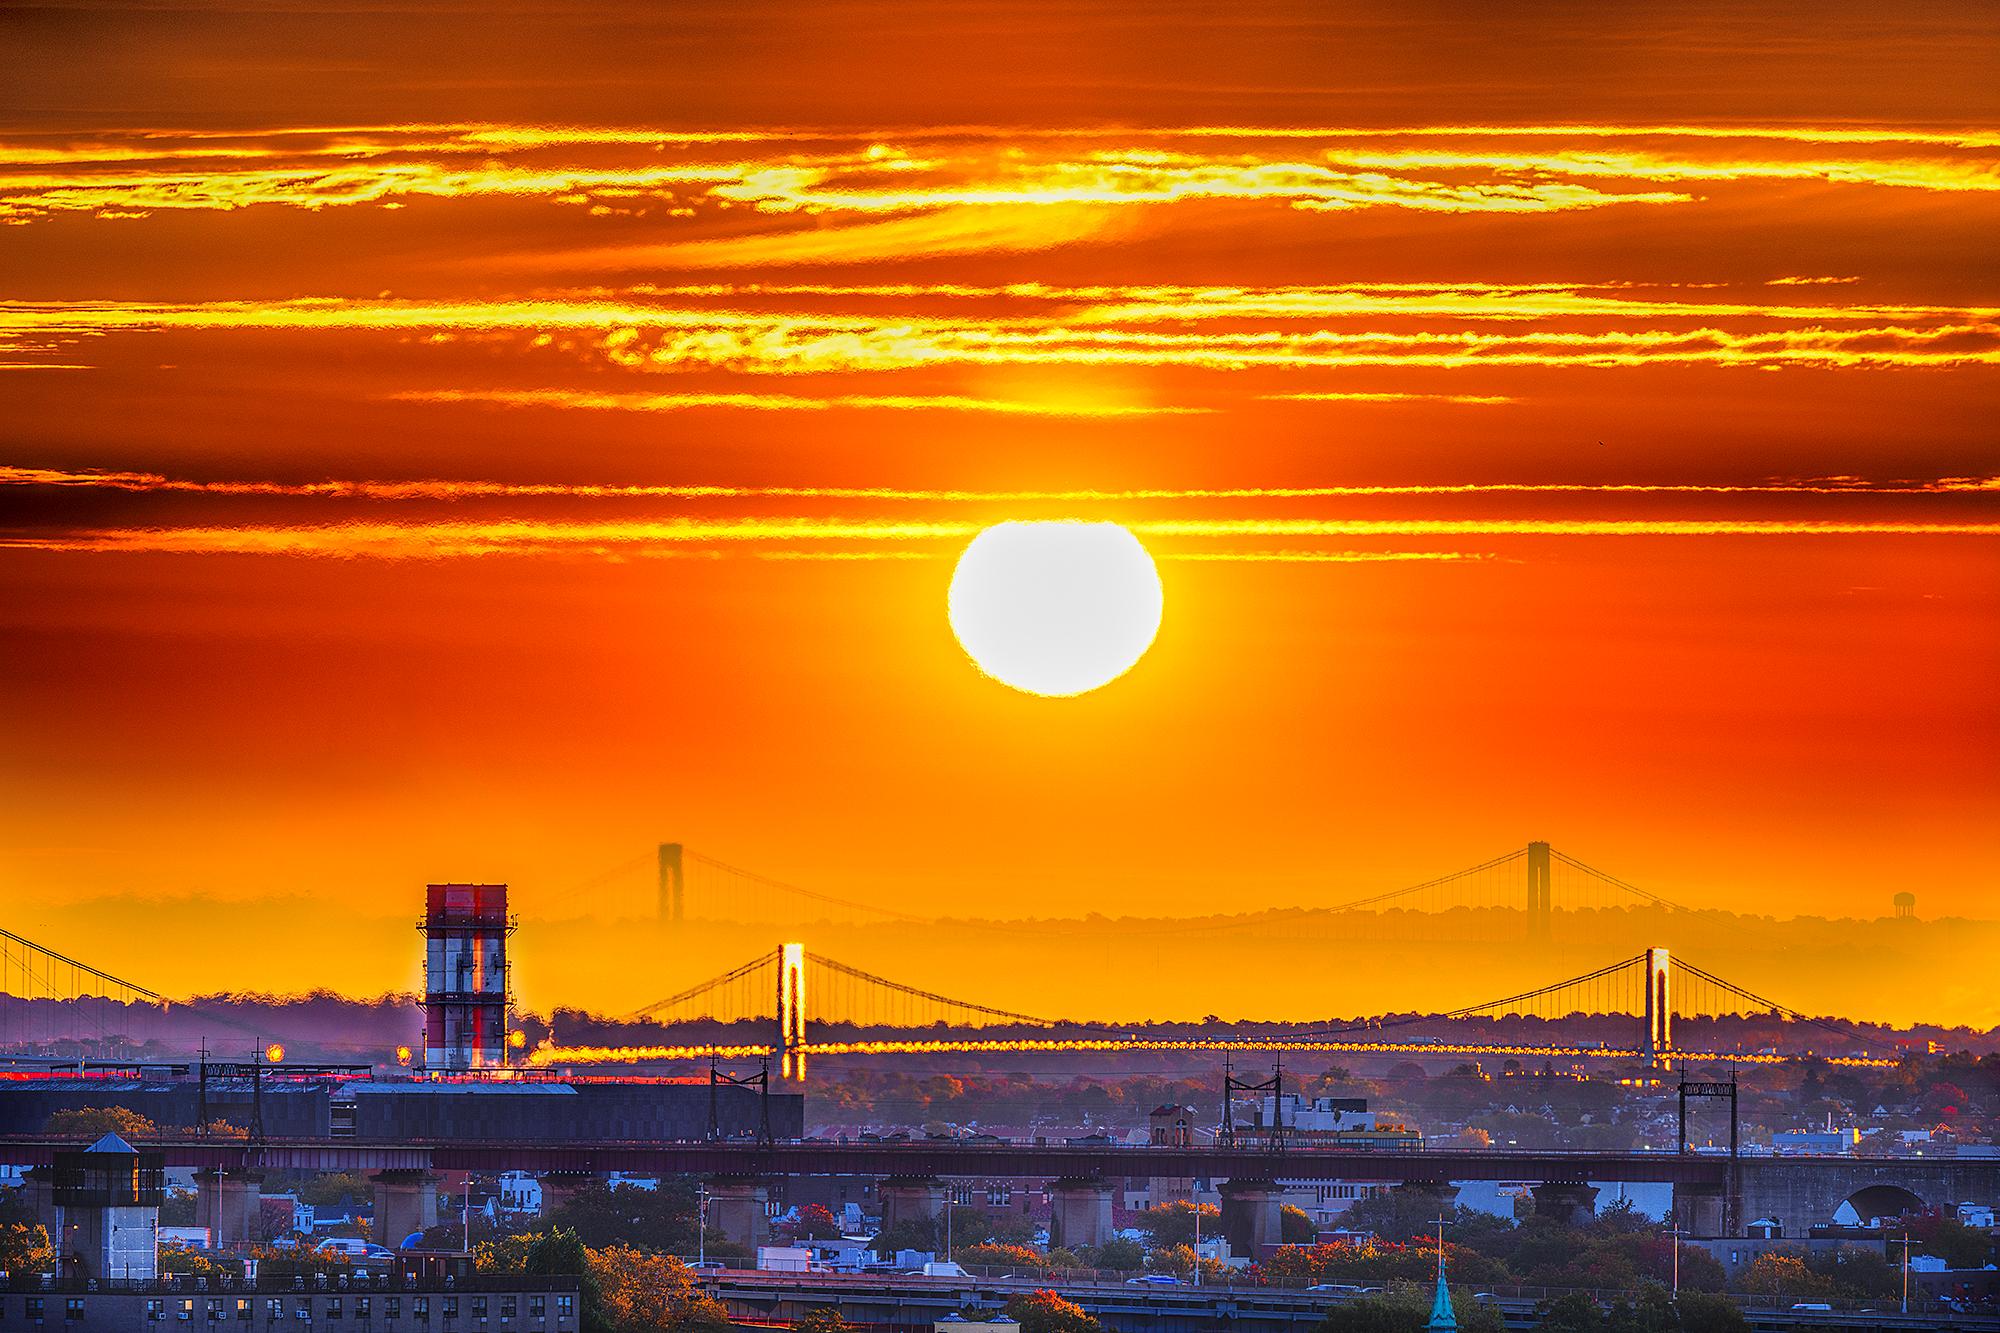 Mitchell Funk Landscape Photograph – Die Brücken von New York City bei Sonnenuntergang in lebhaftem Orange